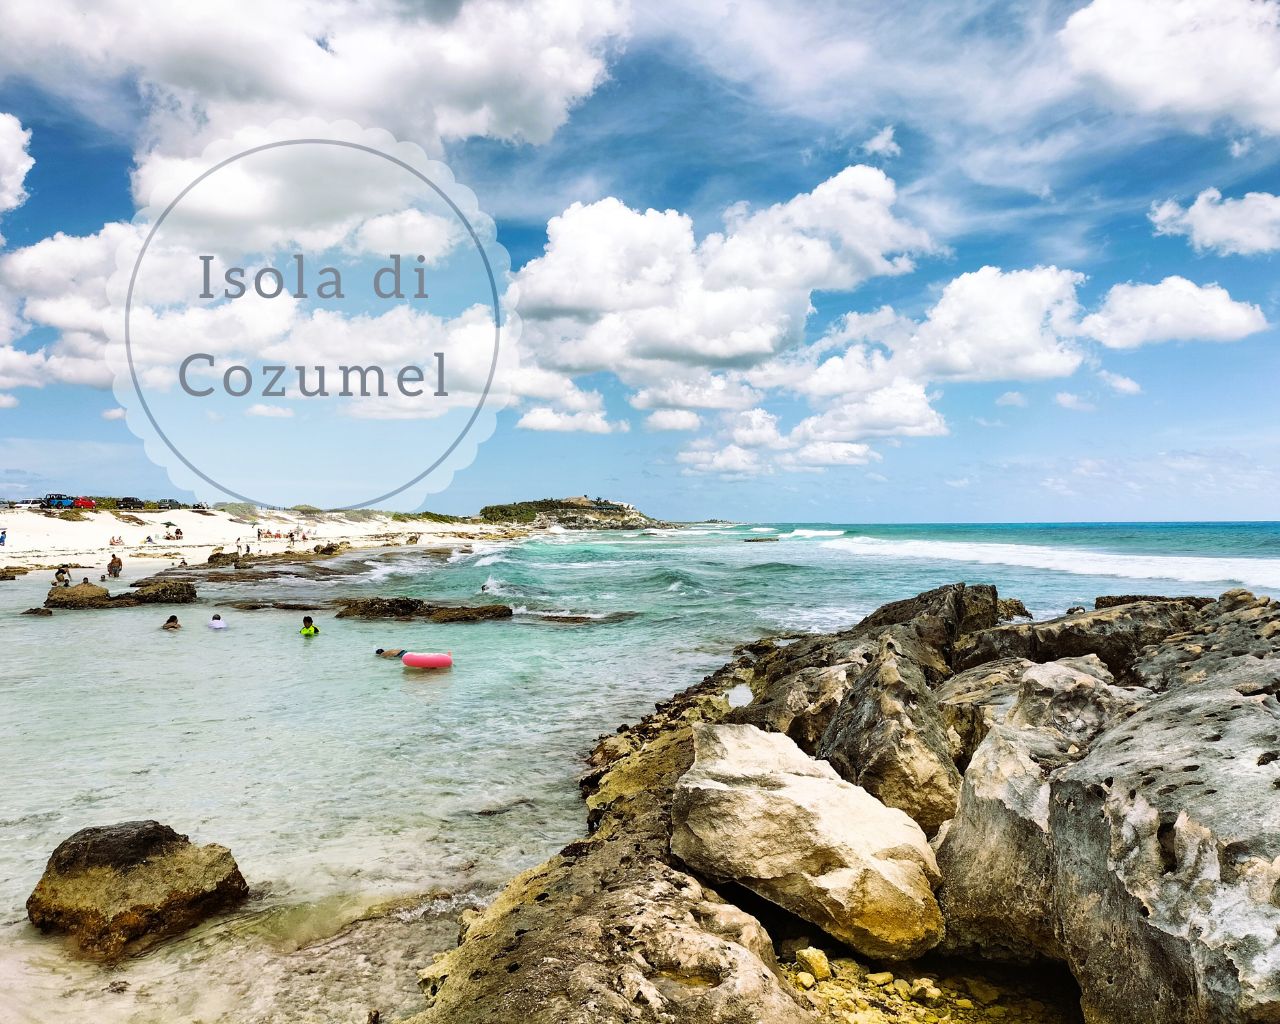 Cosa fare due giorni sull'isola di Cozumel | Girovagando con Stefania -  Blog di viaggi e trekking